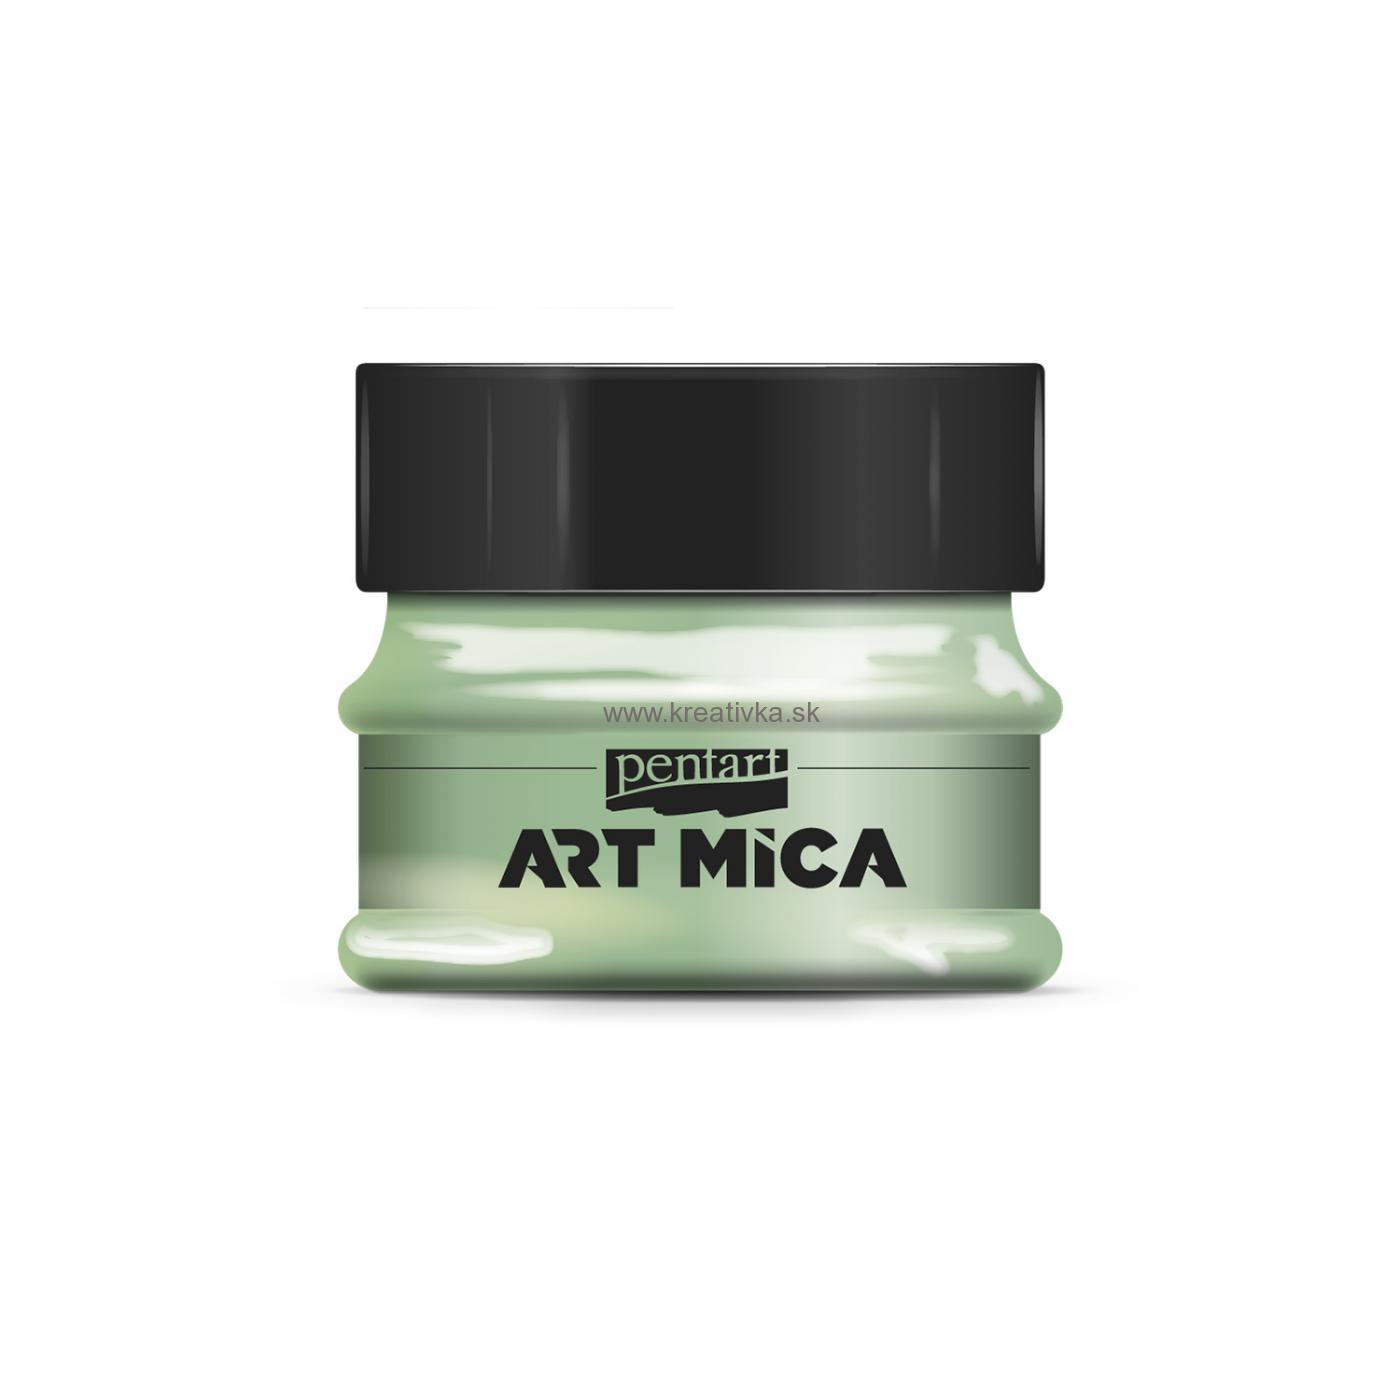 ART MICA minerálny práškový pigment, 9g, zlato zelená